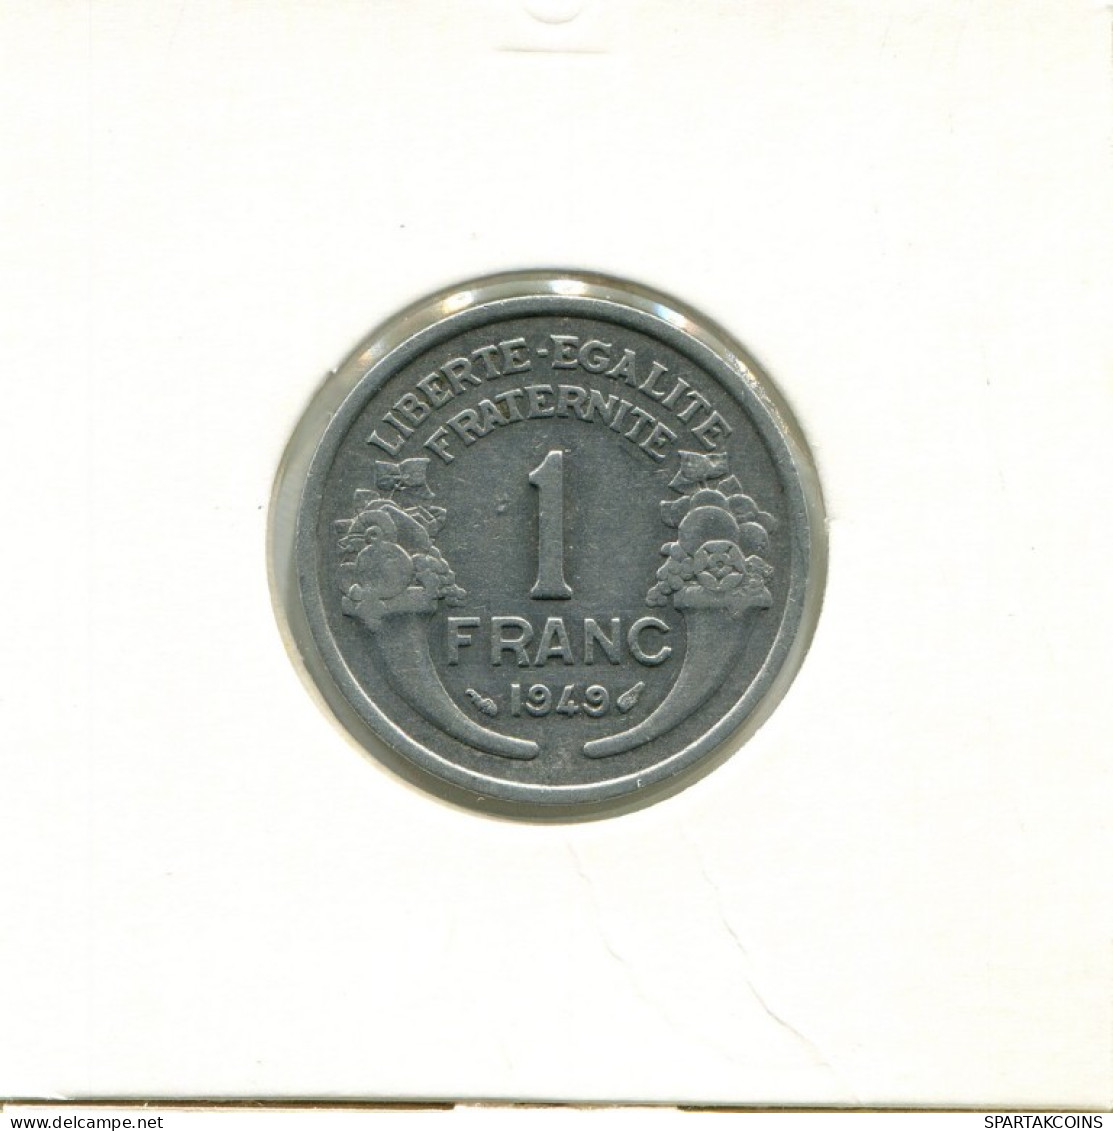 1 FRANC 1949 FRANCE Coin French Coin #AK592.U.A - 1 Franc